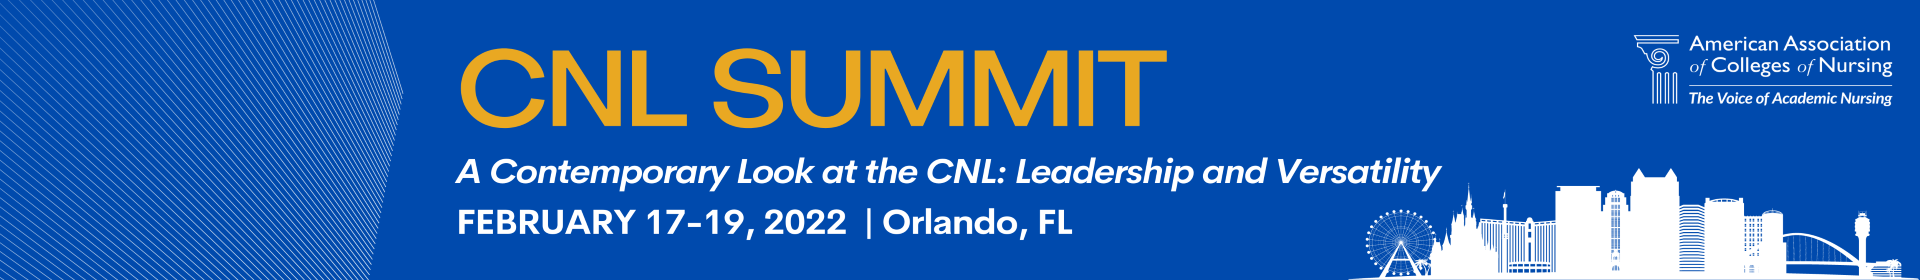 CNL Summit 2022 Event Banner